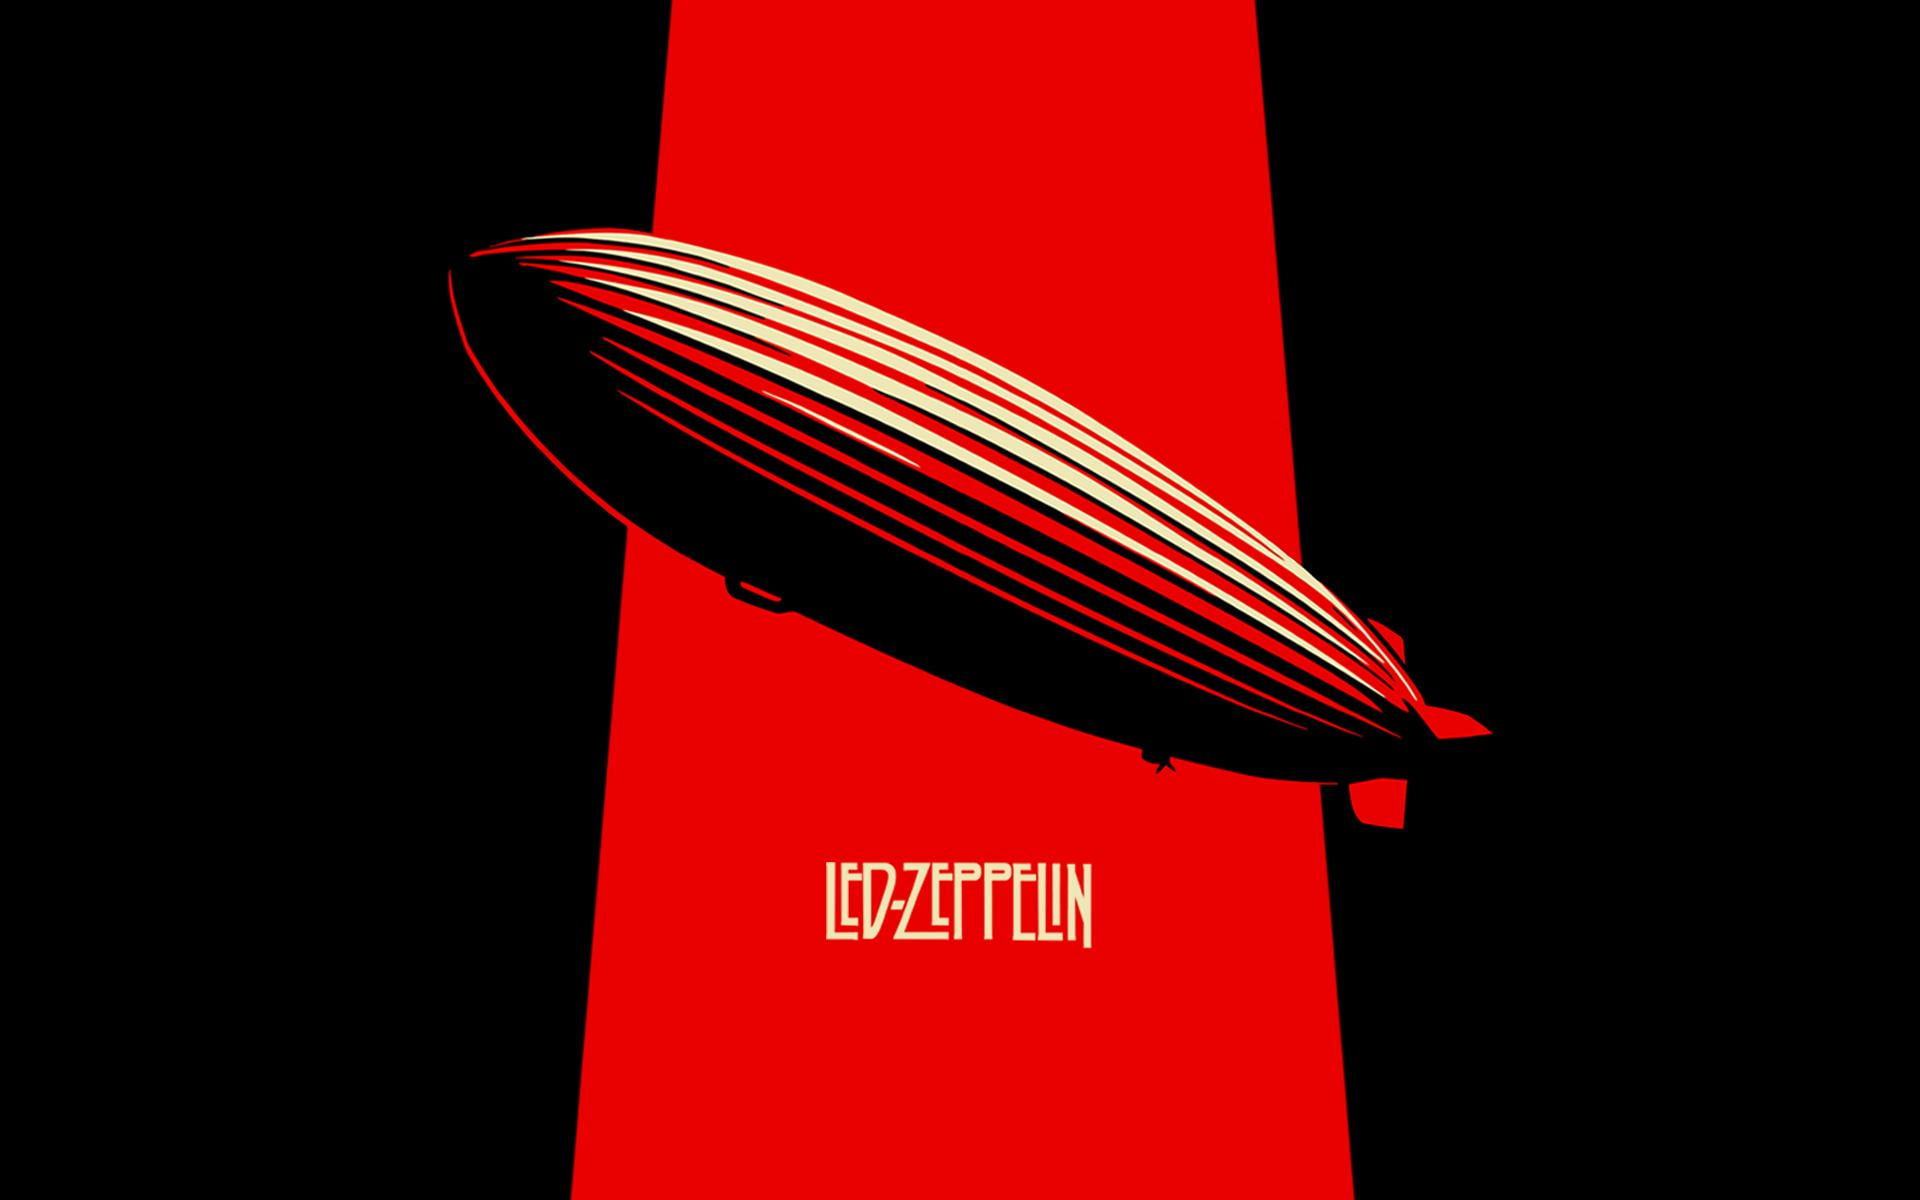 Led Zeppelin Band, Led Zepplin illustration, Music, music band